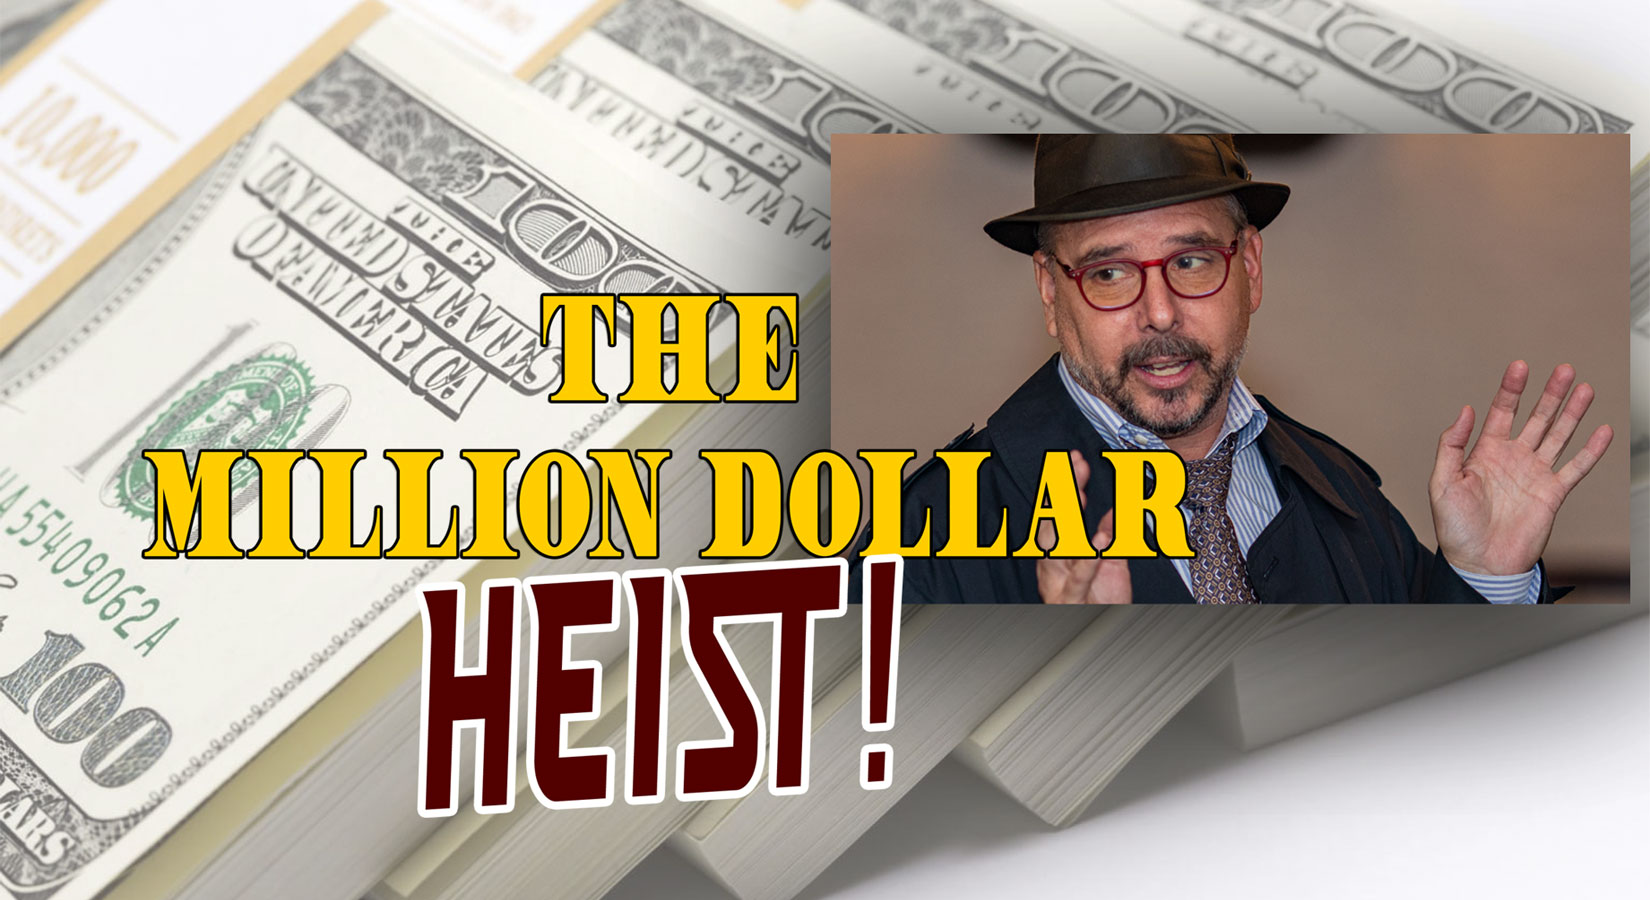 The Million Dollar Heist